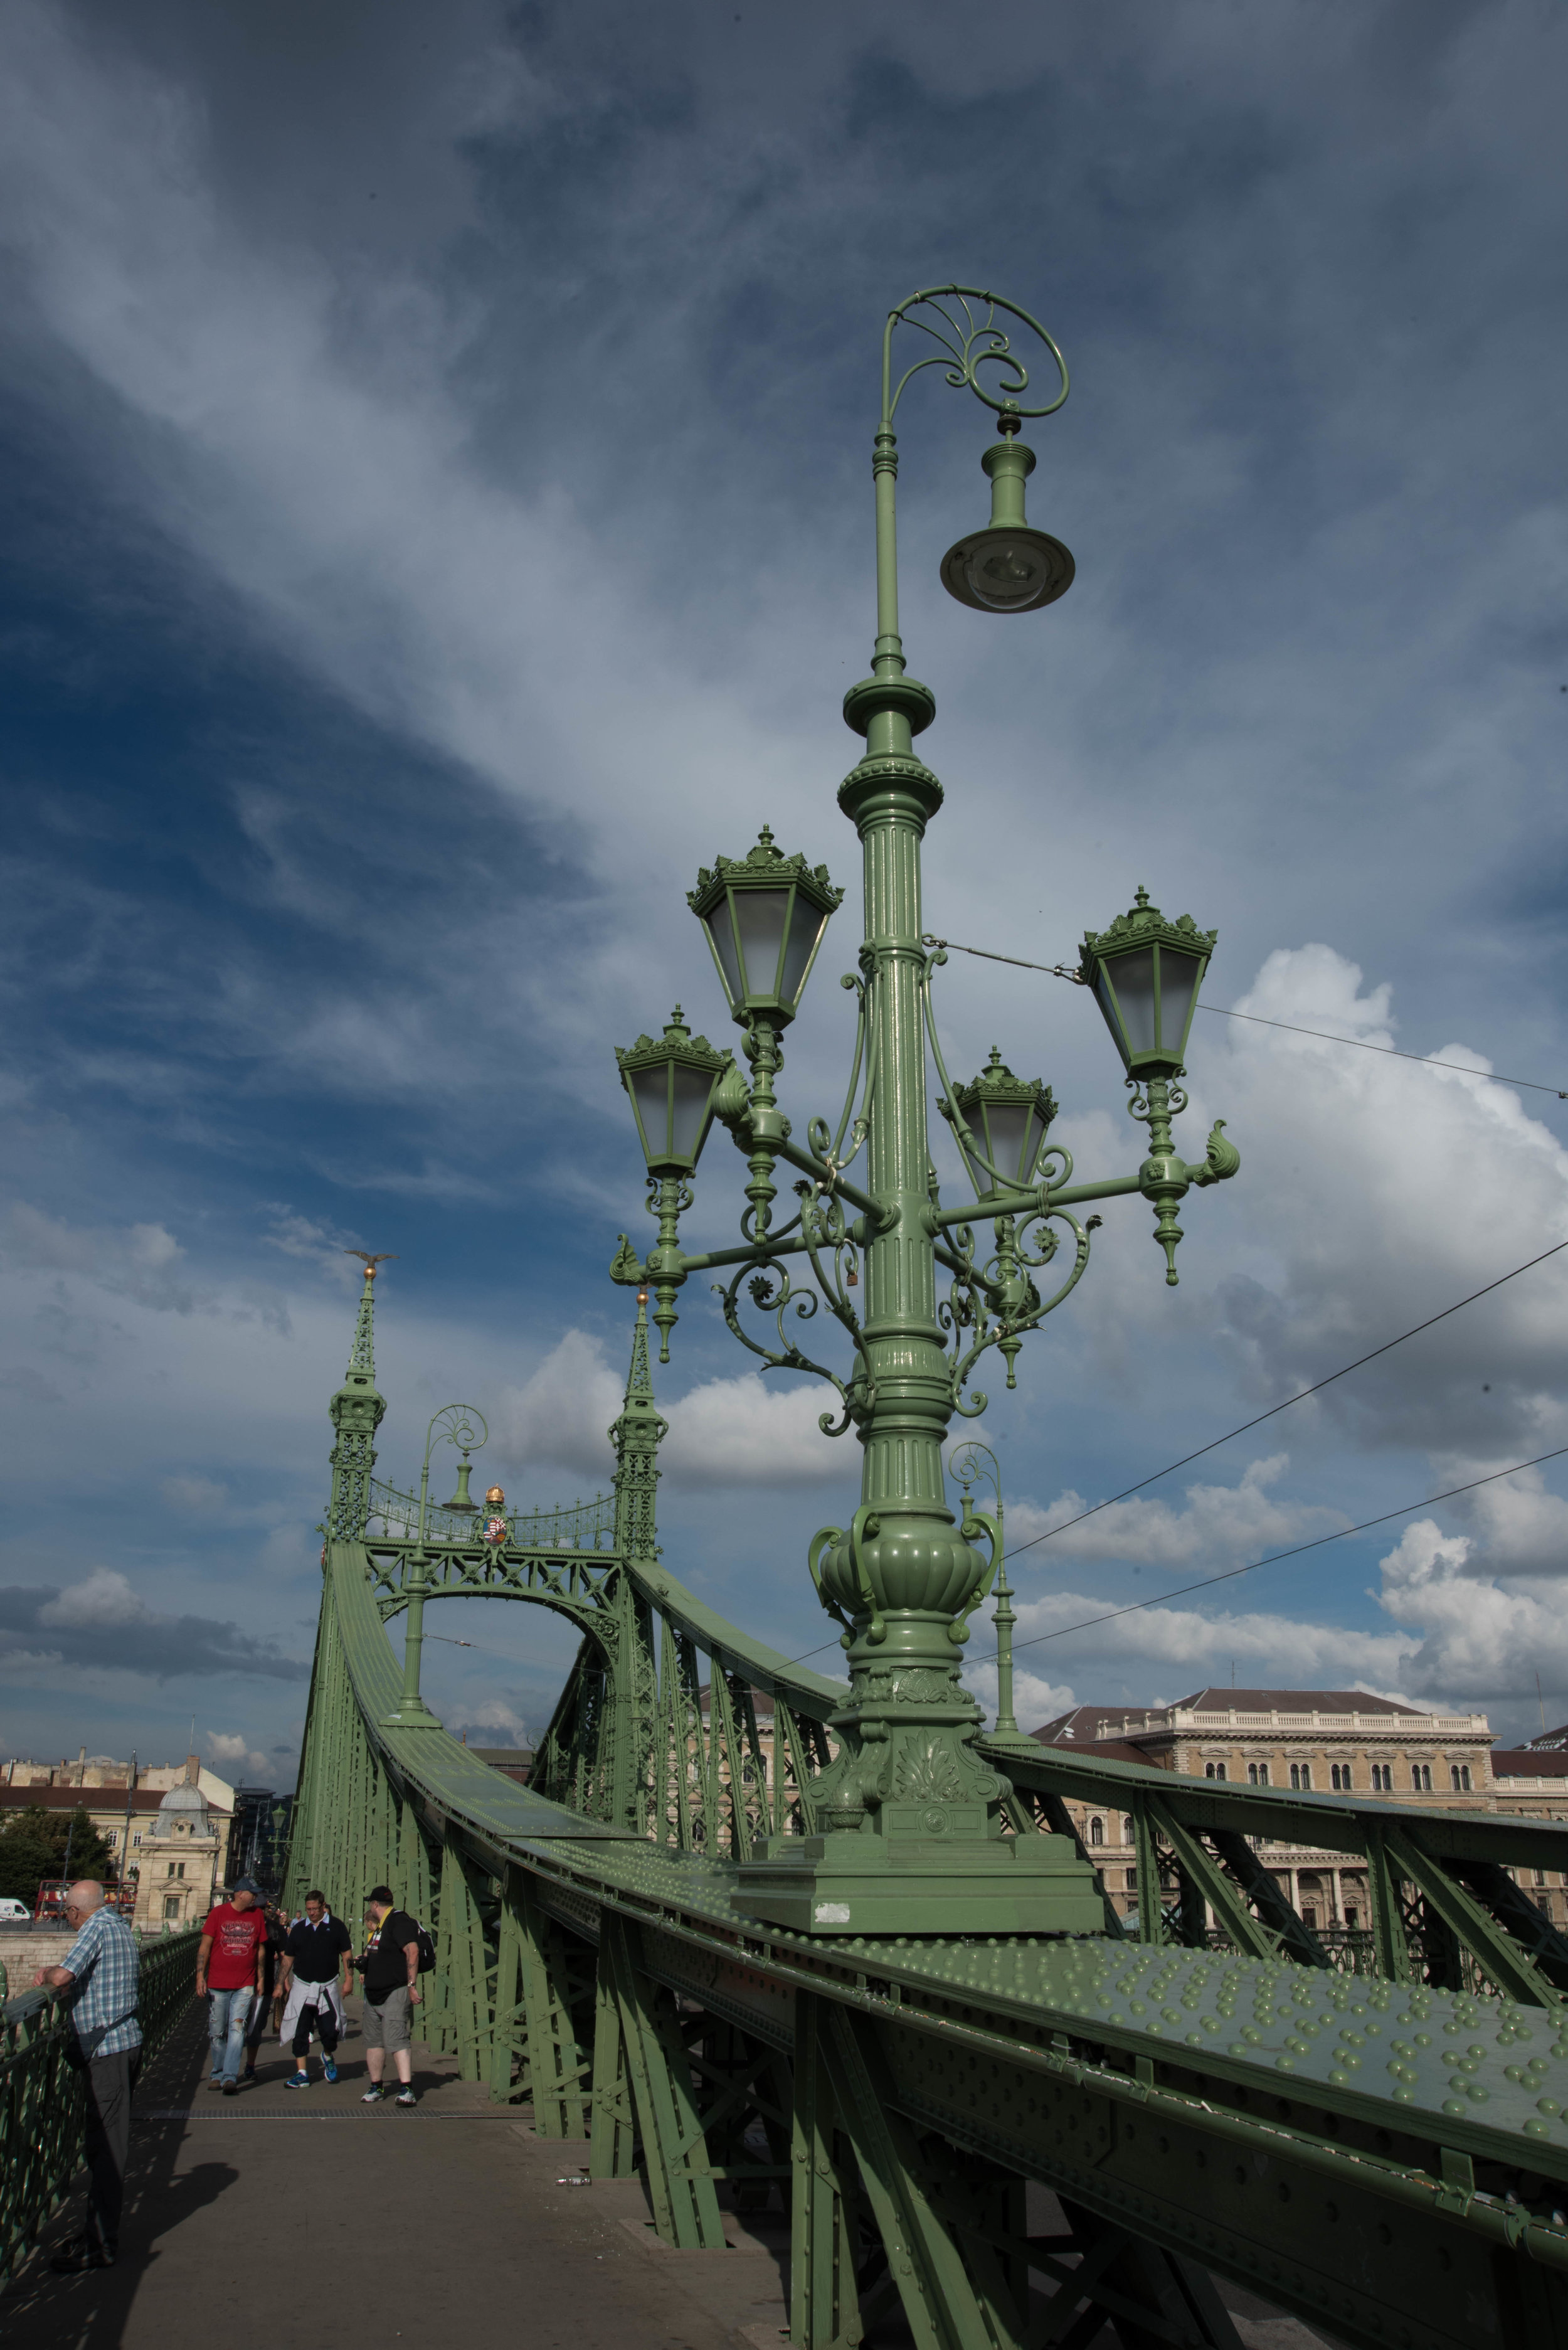 Szabadsag (Liberty) Bridge, Budapest